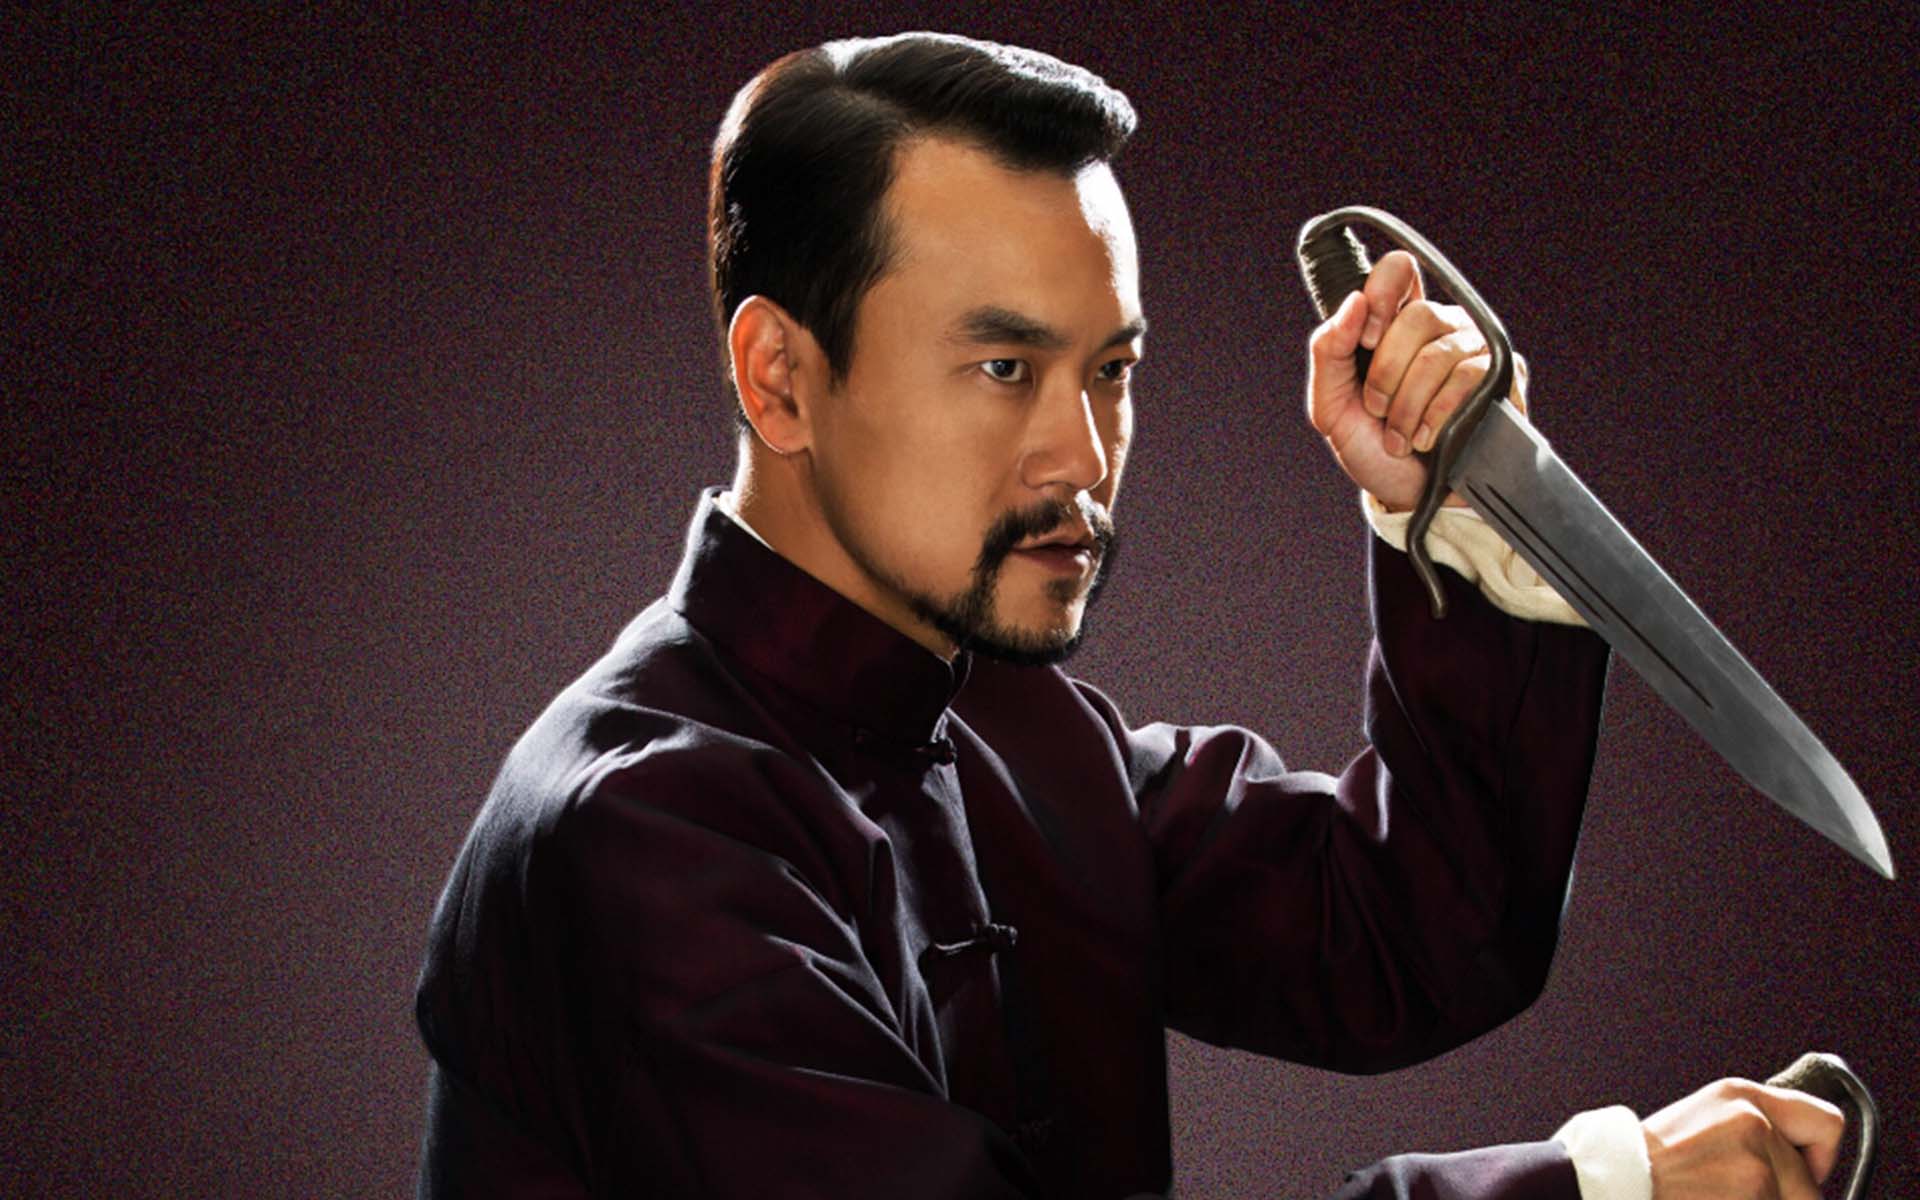 为什么说徐皓峰的《师父》突破了以往的武侠电影?